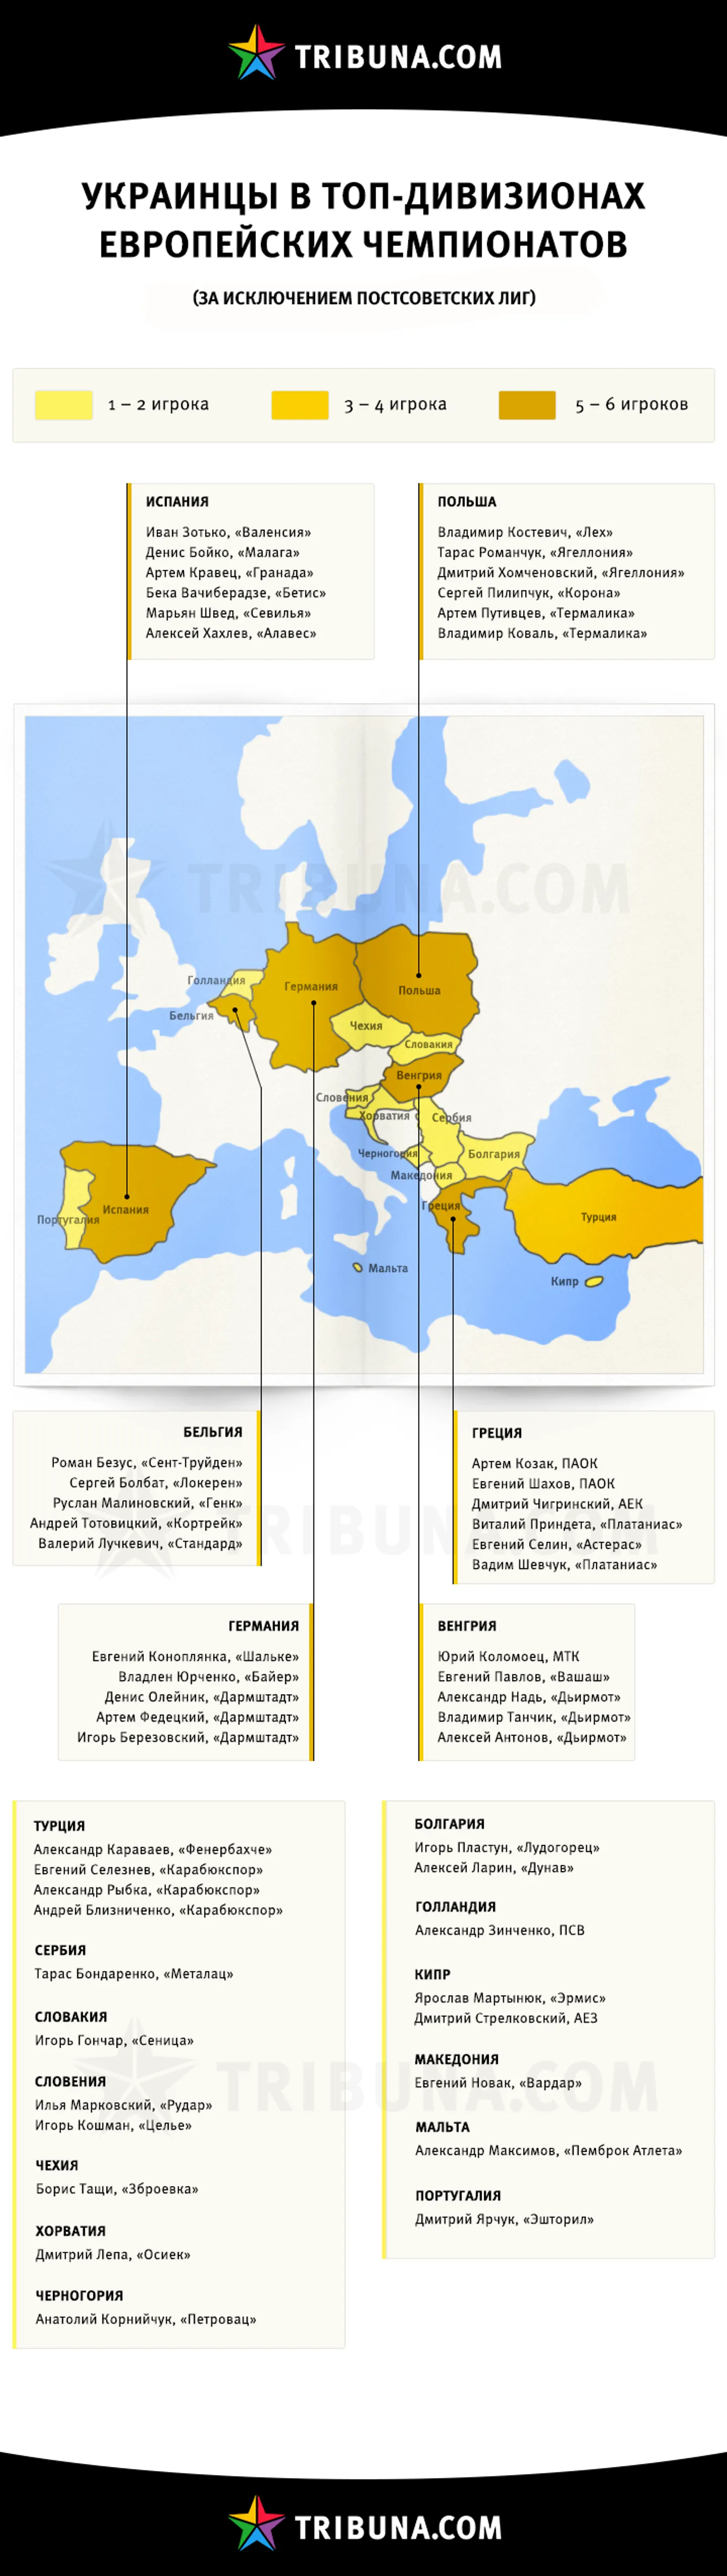 Украинцы в европейских чемпионатах. Инфографика Tribuna.com